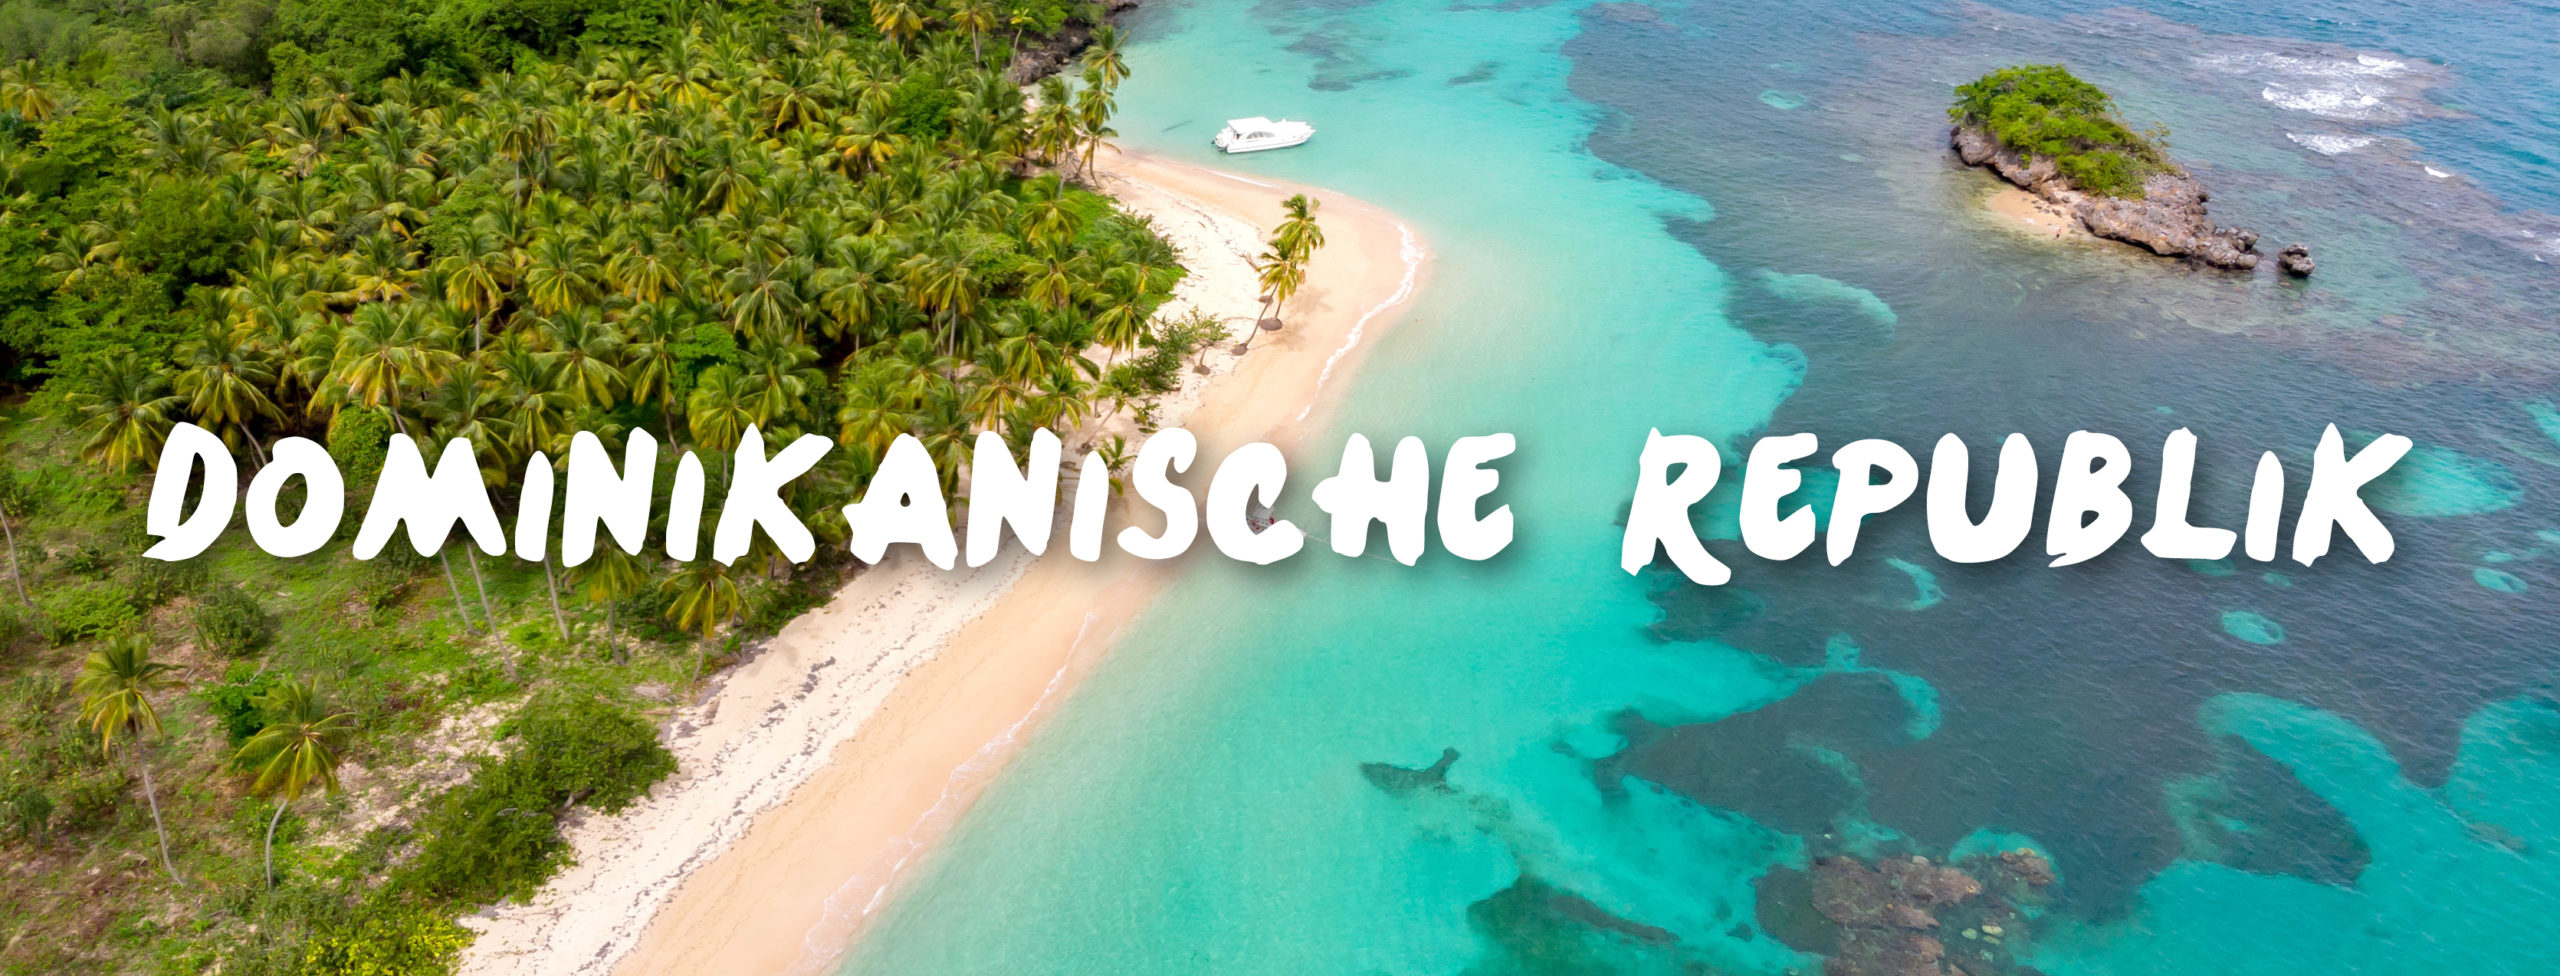 Dominikanische Republik Urlaub buchen Reisebüro Rosenheim Wagner Reisen Raubling